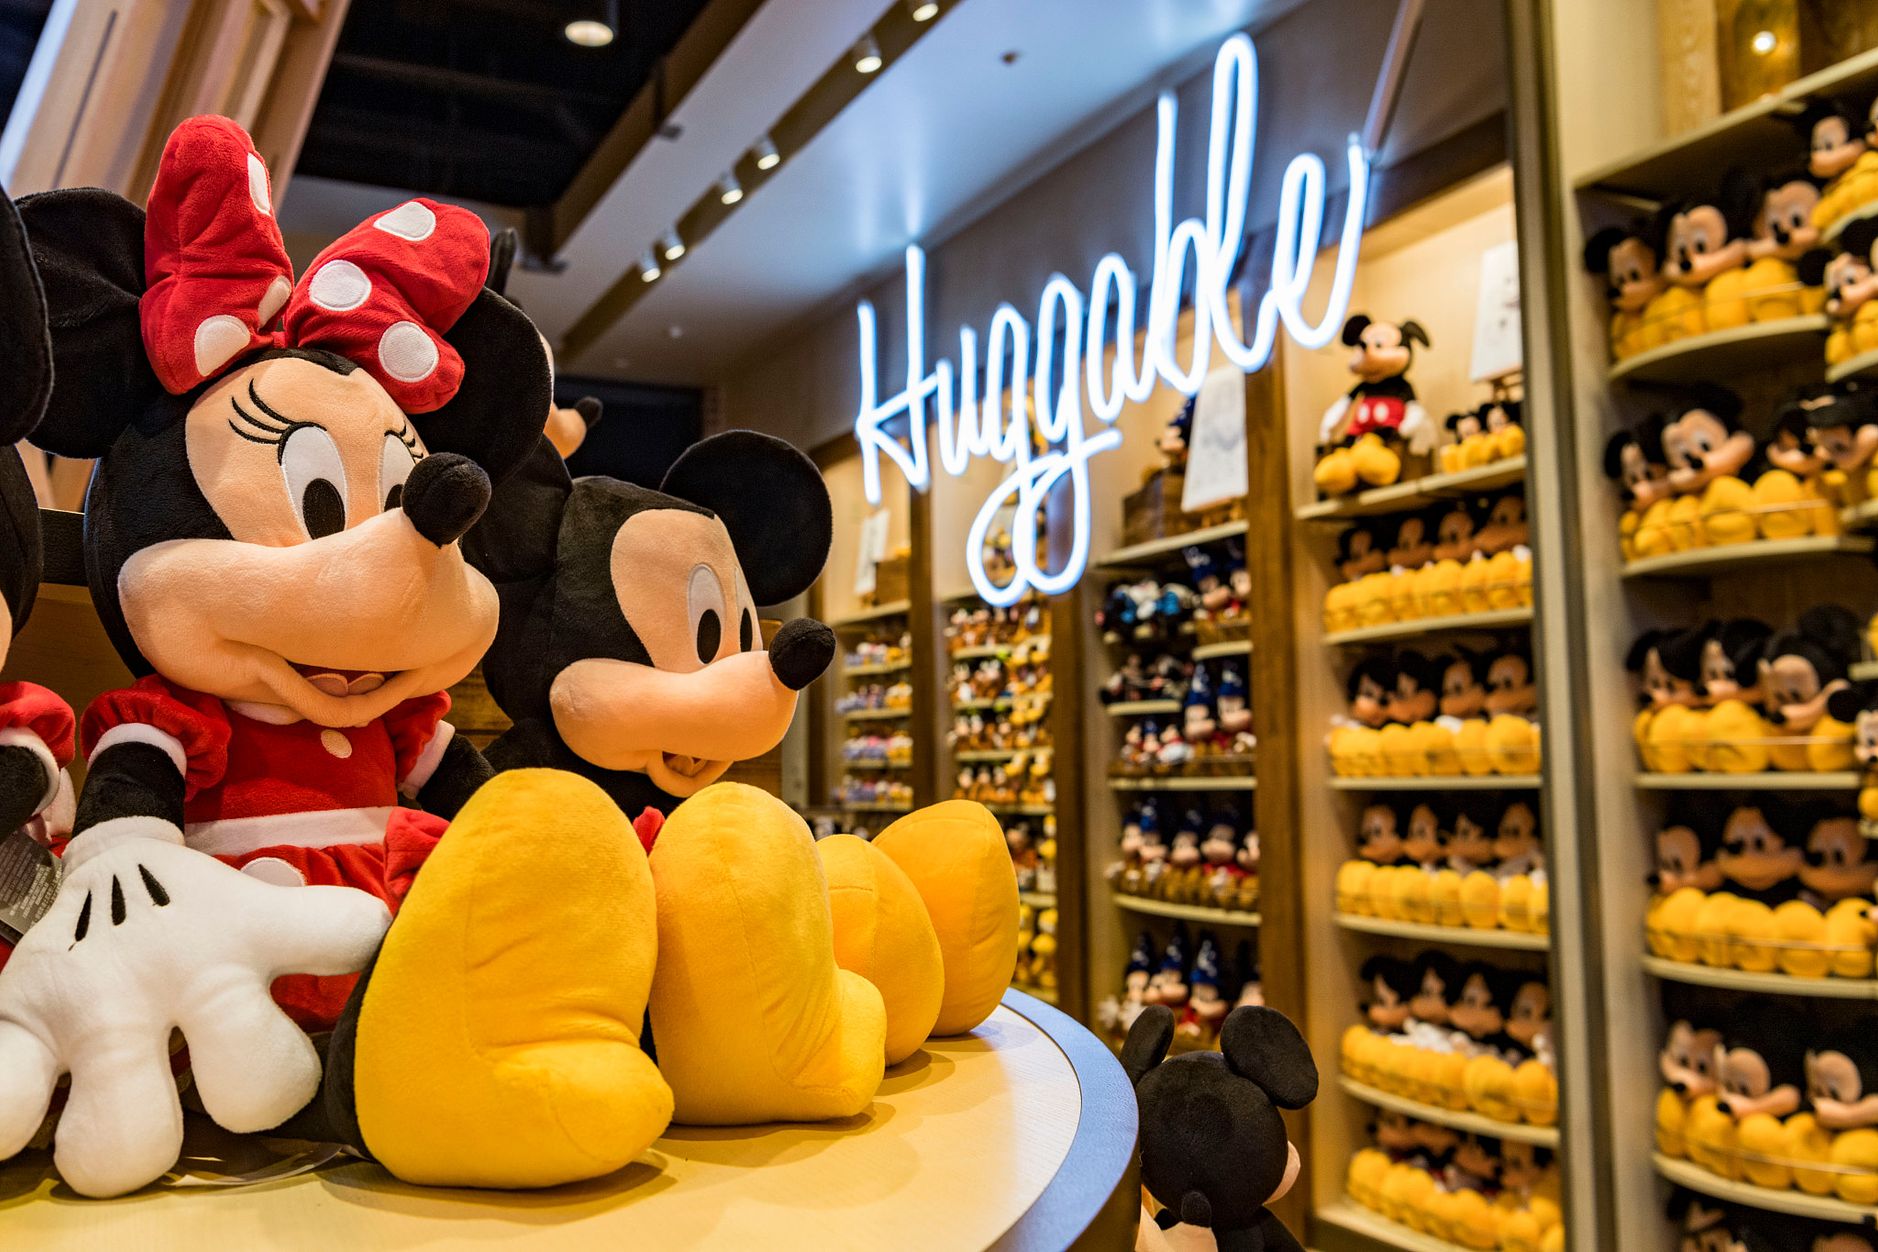 The Walt Disney Store is now open on International Drive